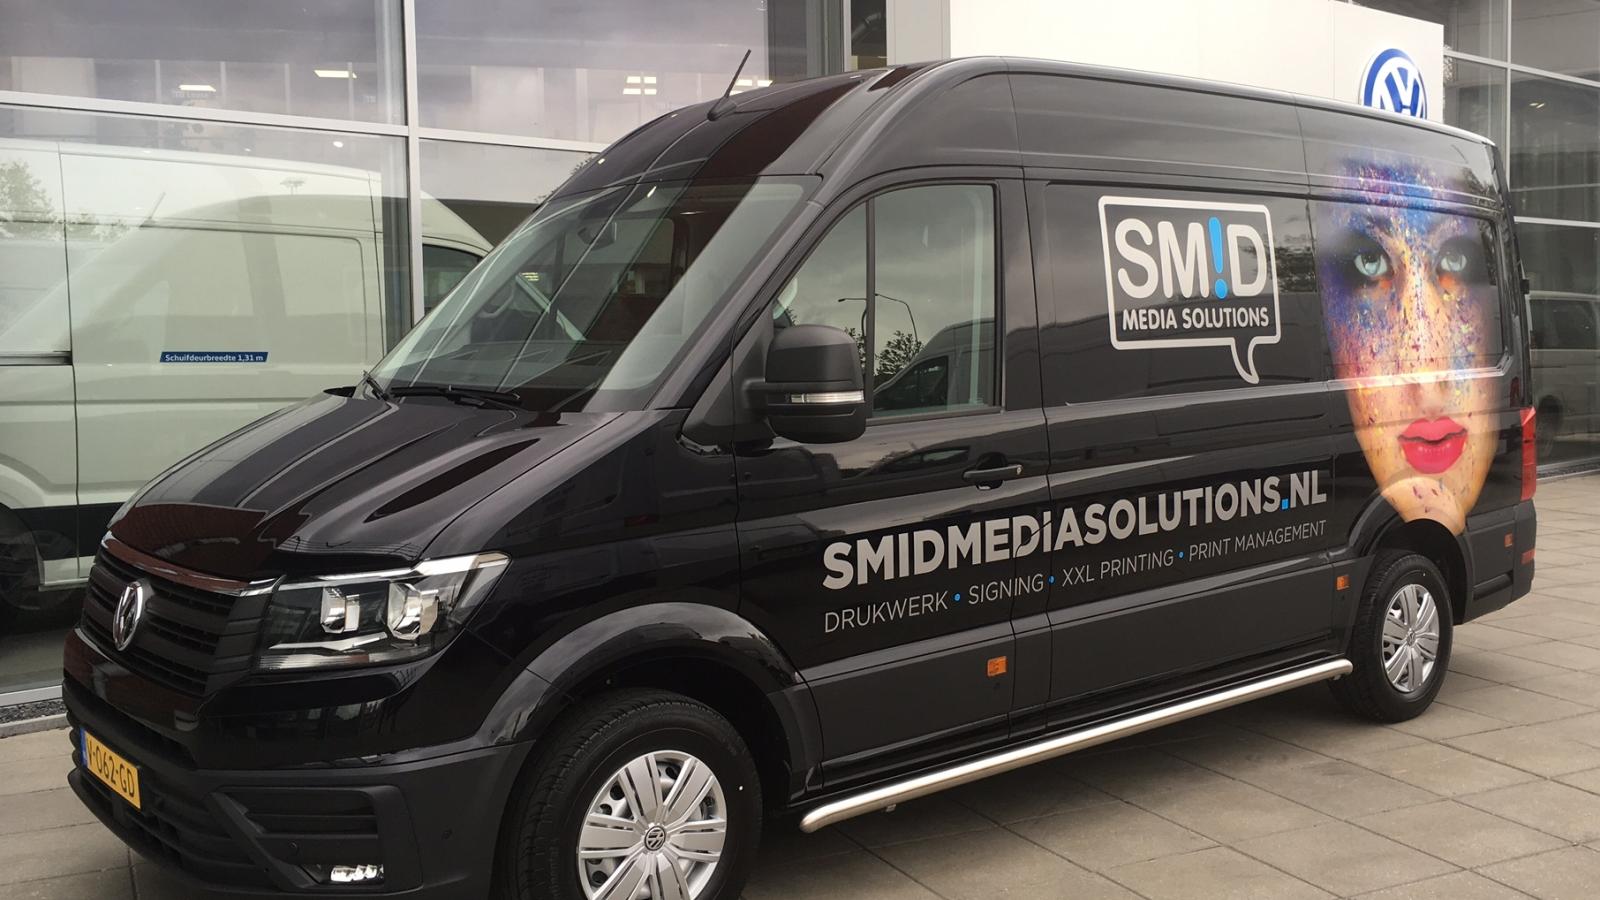 Smid Media Solutions